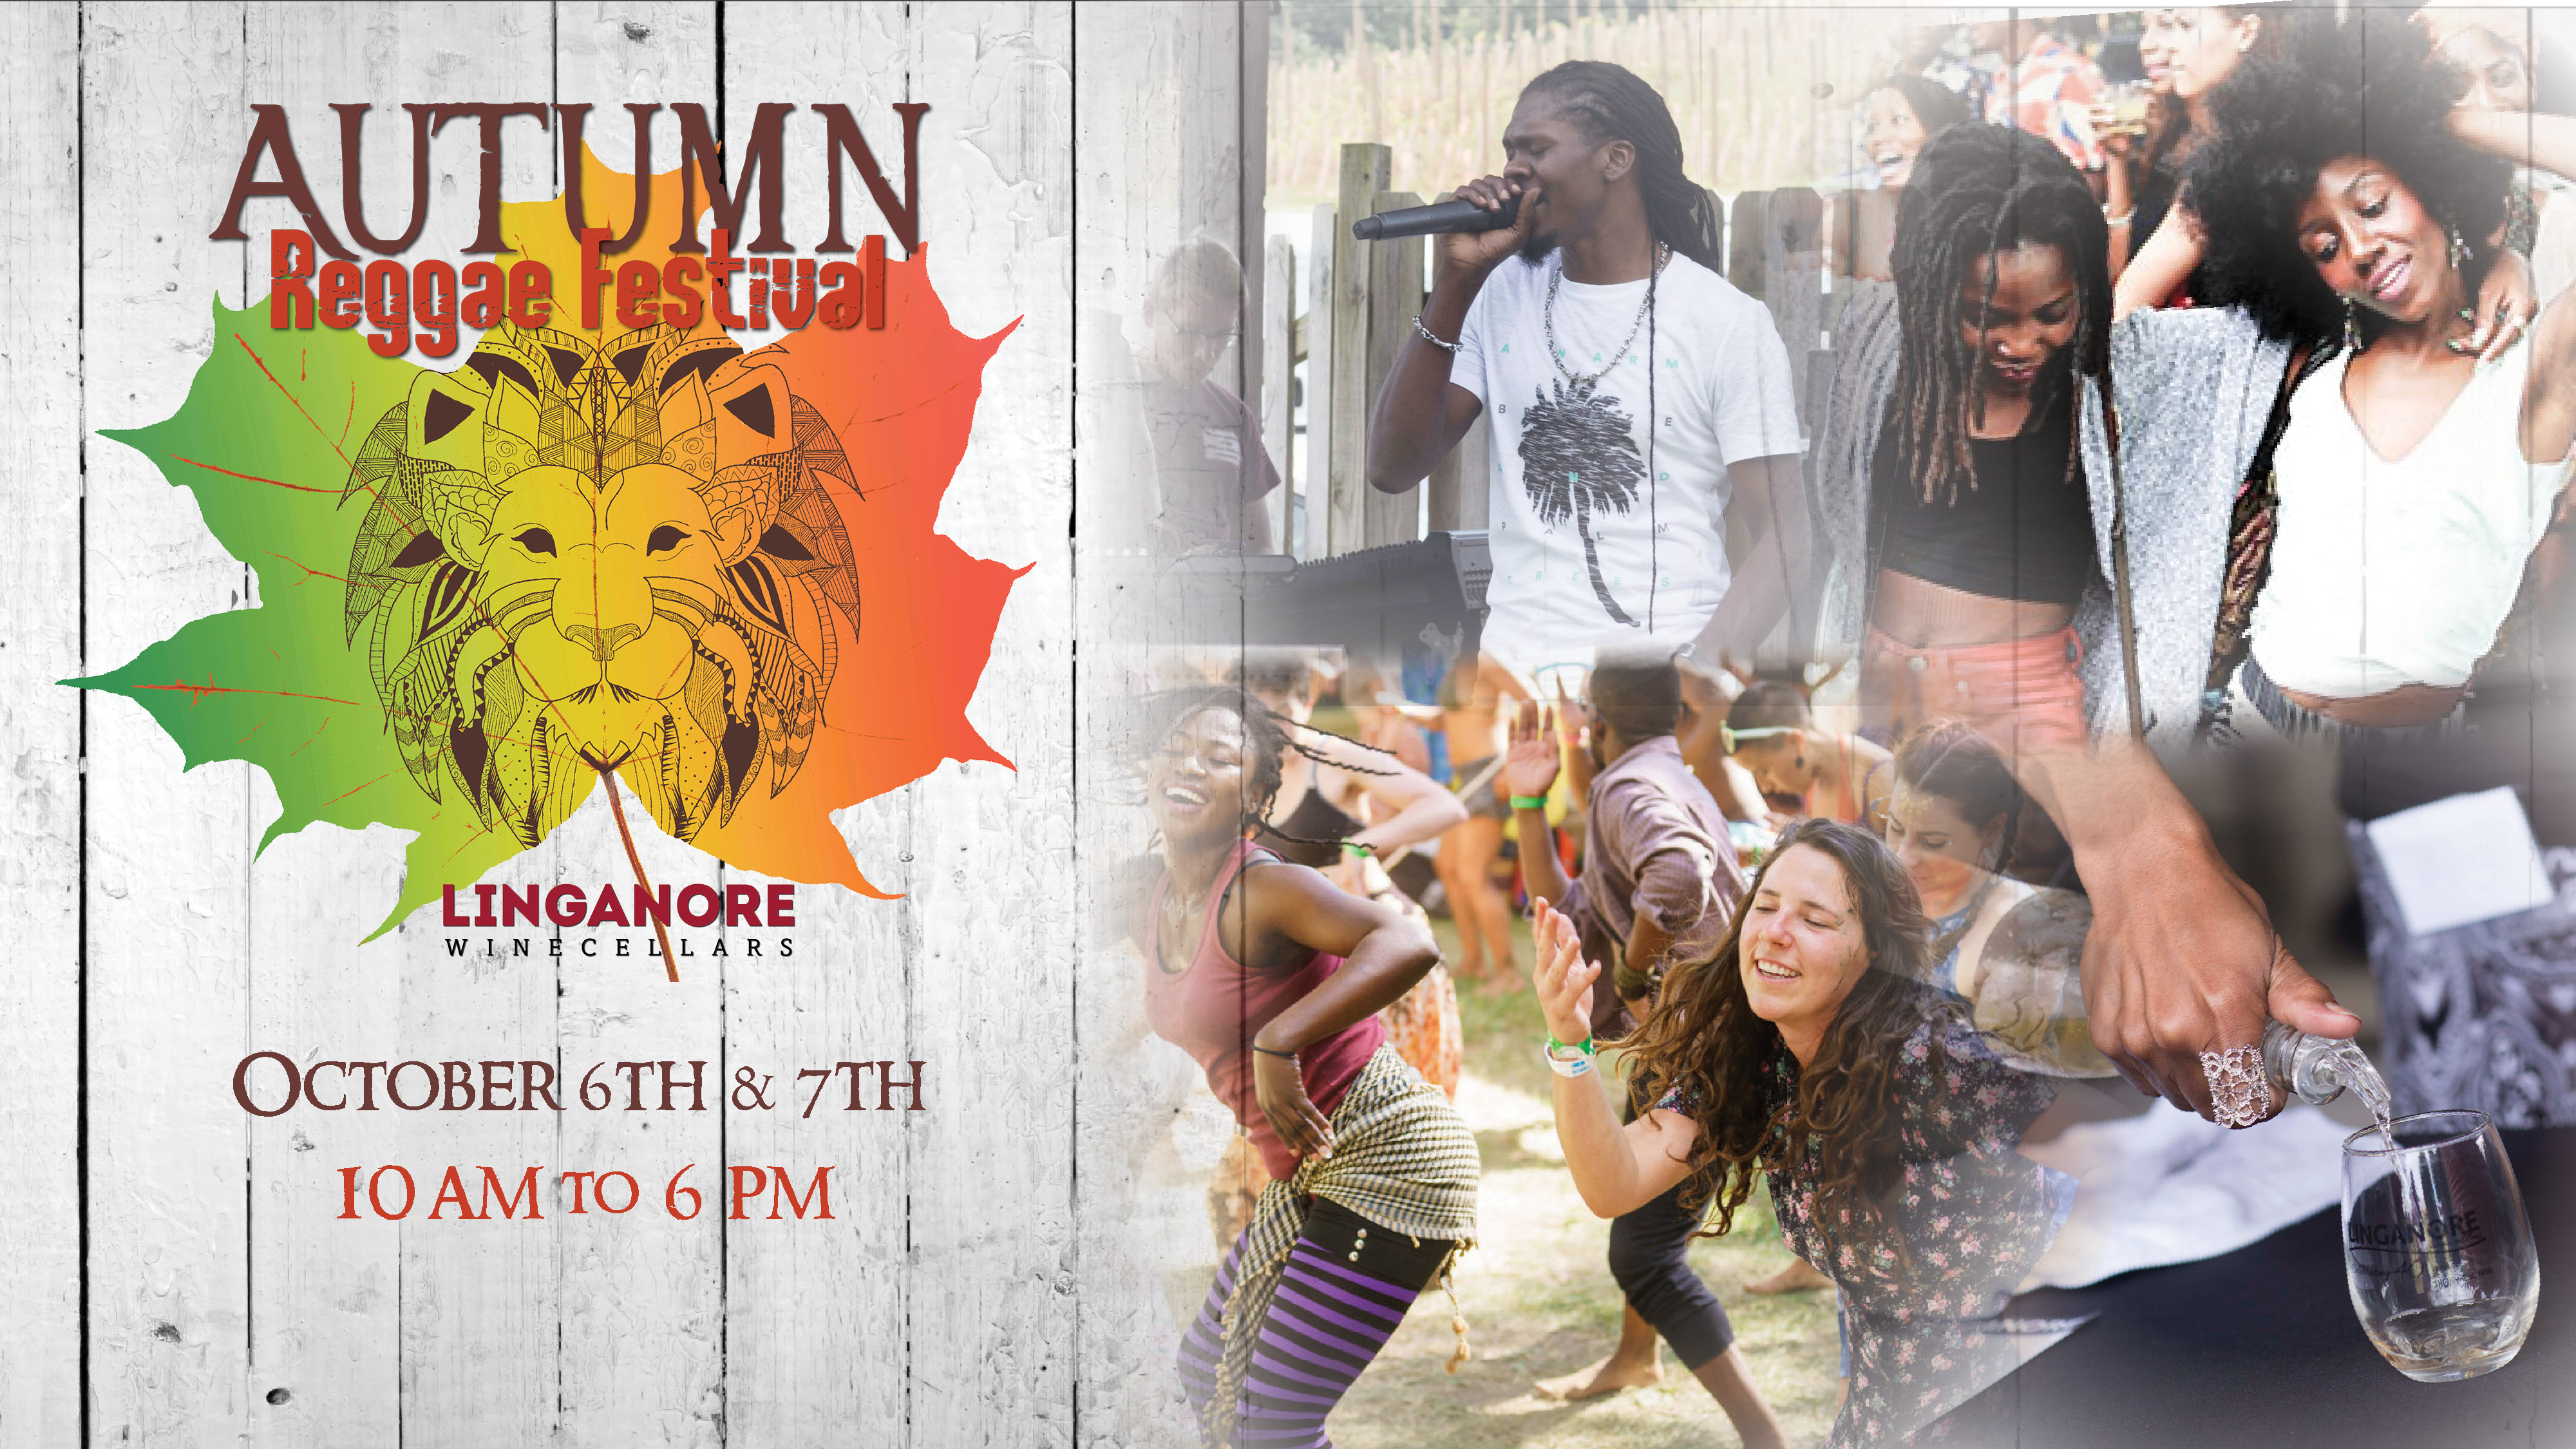 autumn reggae fest announcement